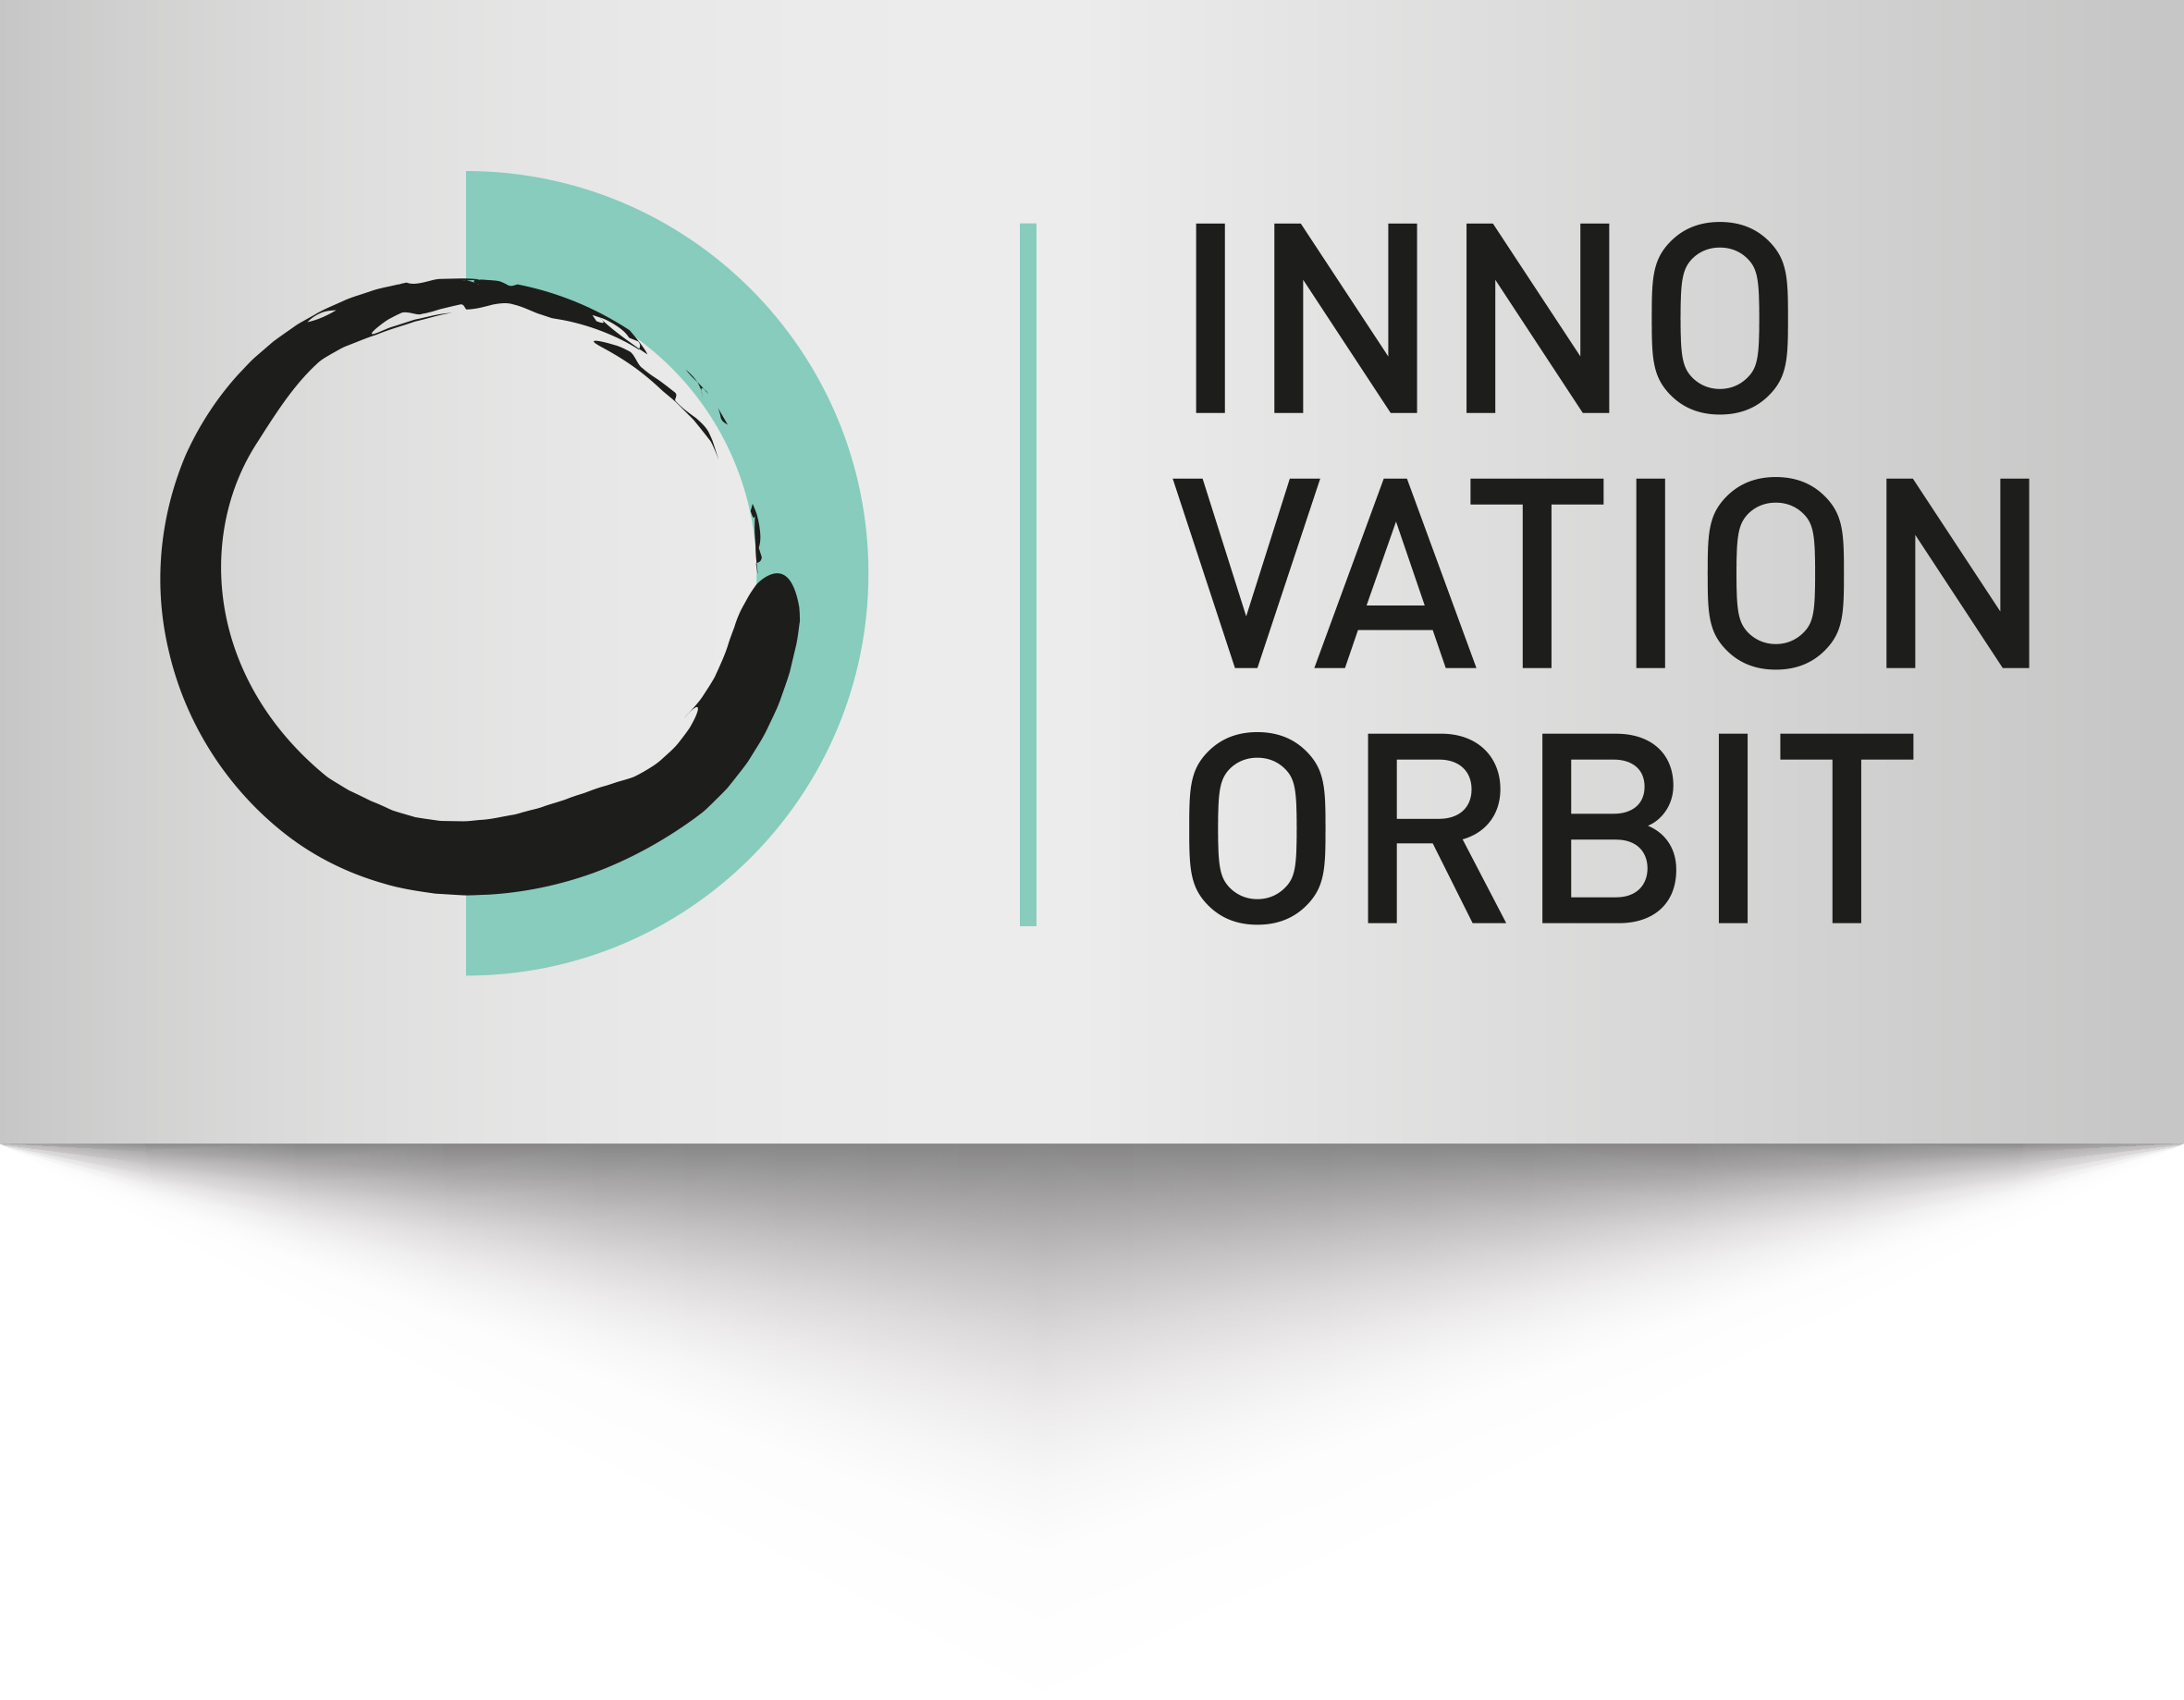 Innovation Orbit